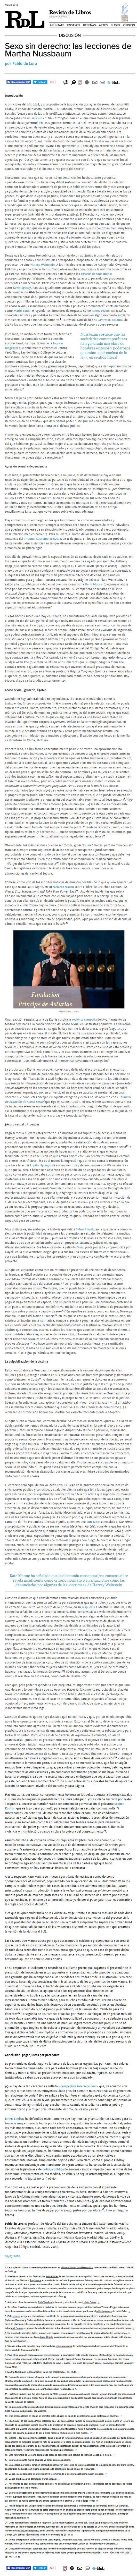 cita do artigo de Xabier Vila-Coia "El caso La manada: ¿violación o película porno?", publicada en Revista de Libros en marzo do 2019 (autor Pablo Lora).